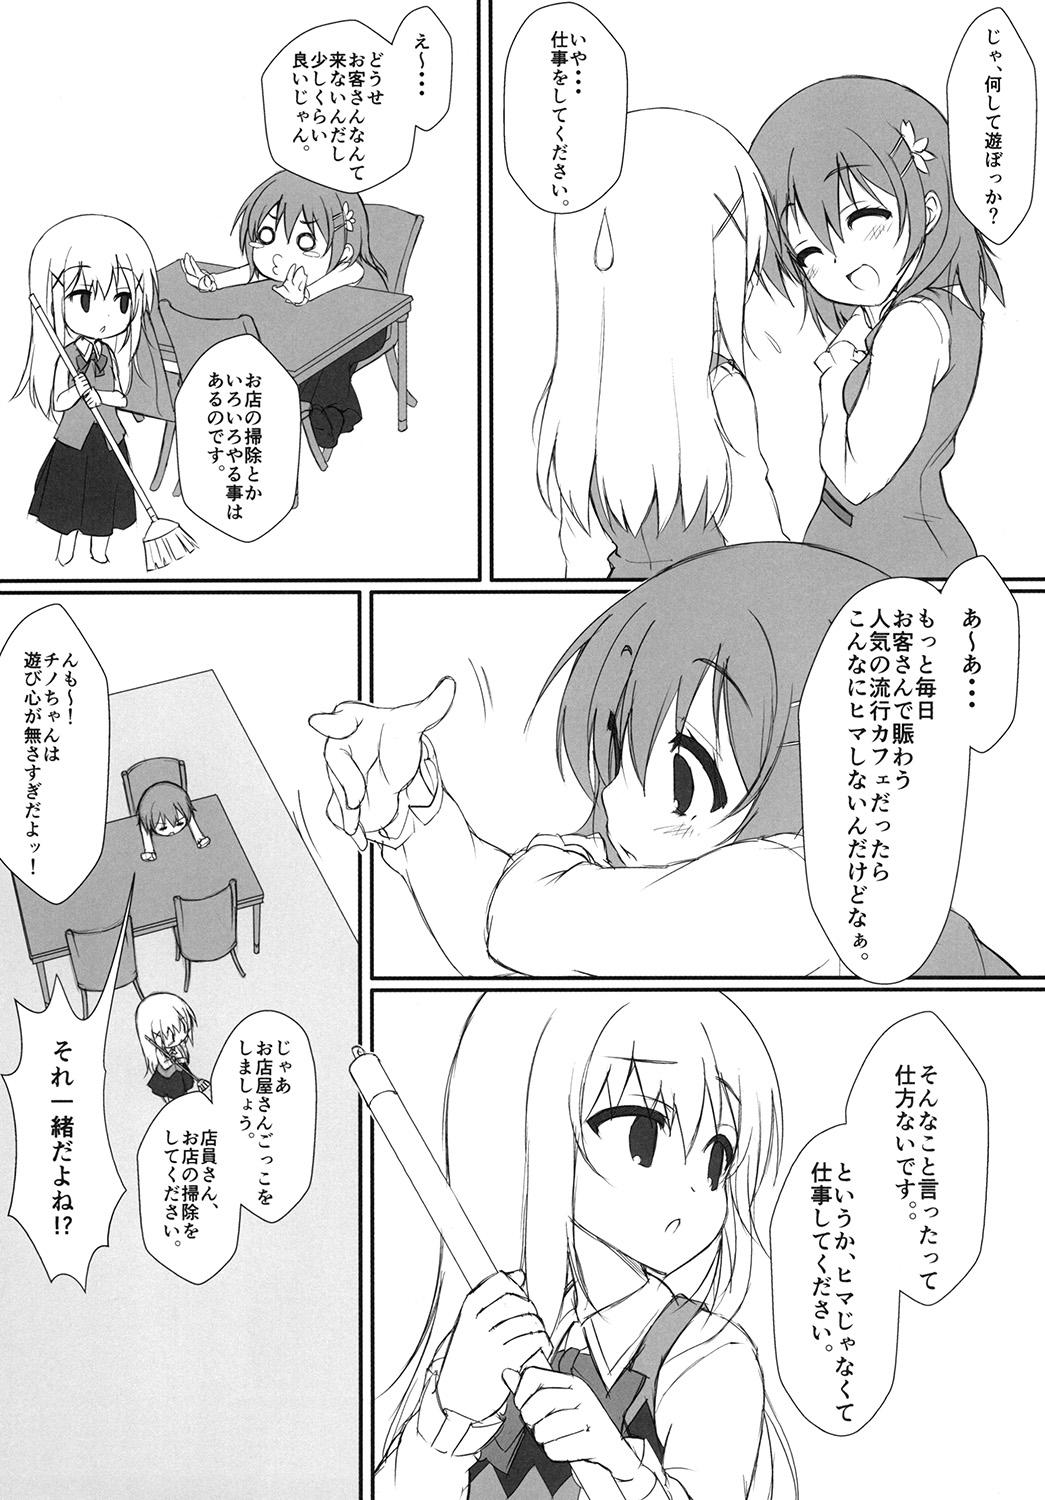 Petite Girl Porn Usagigari - Gochuumon wa usagi desu ka Anal Gape - Page 5